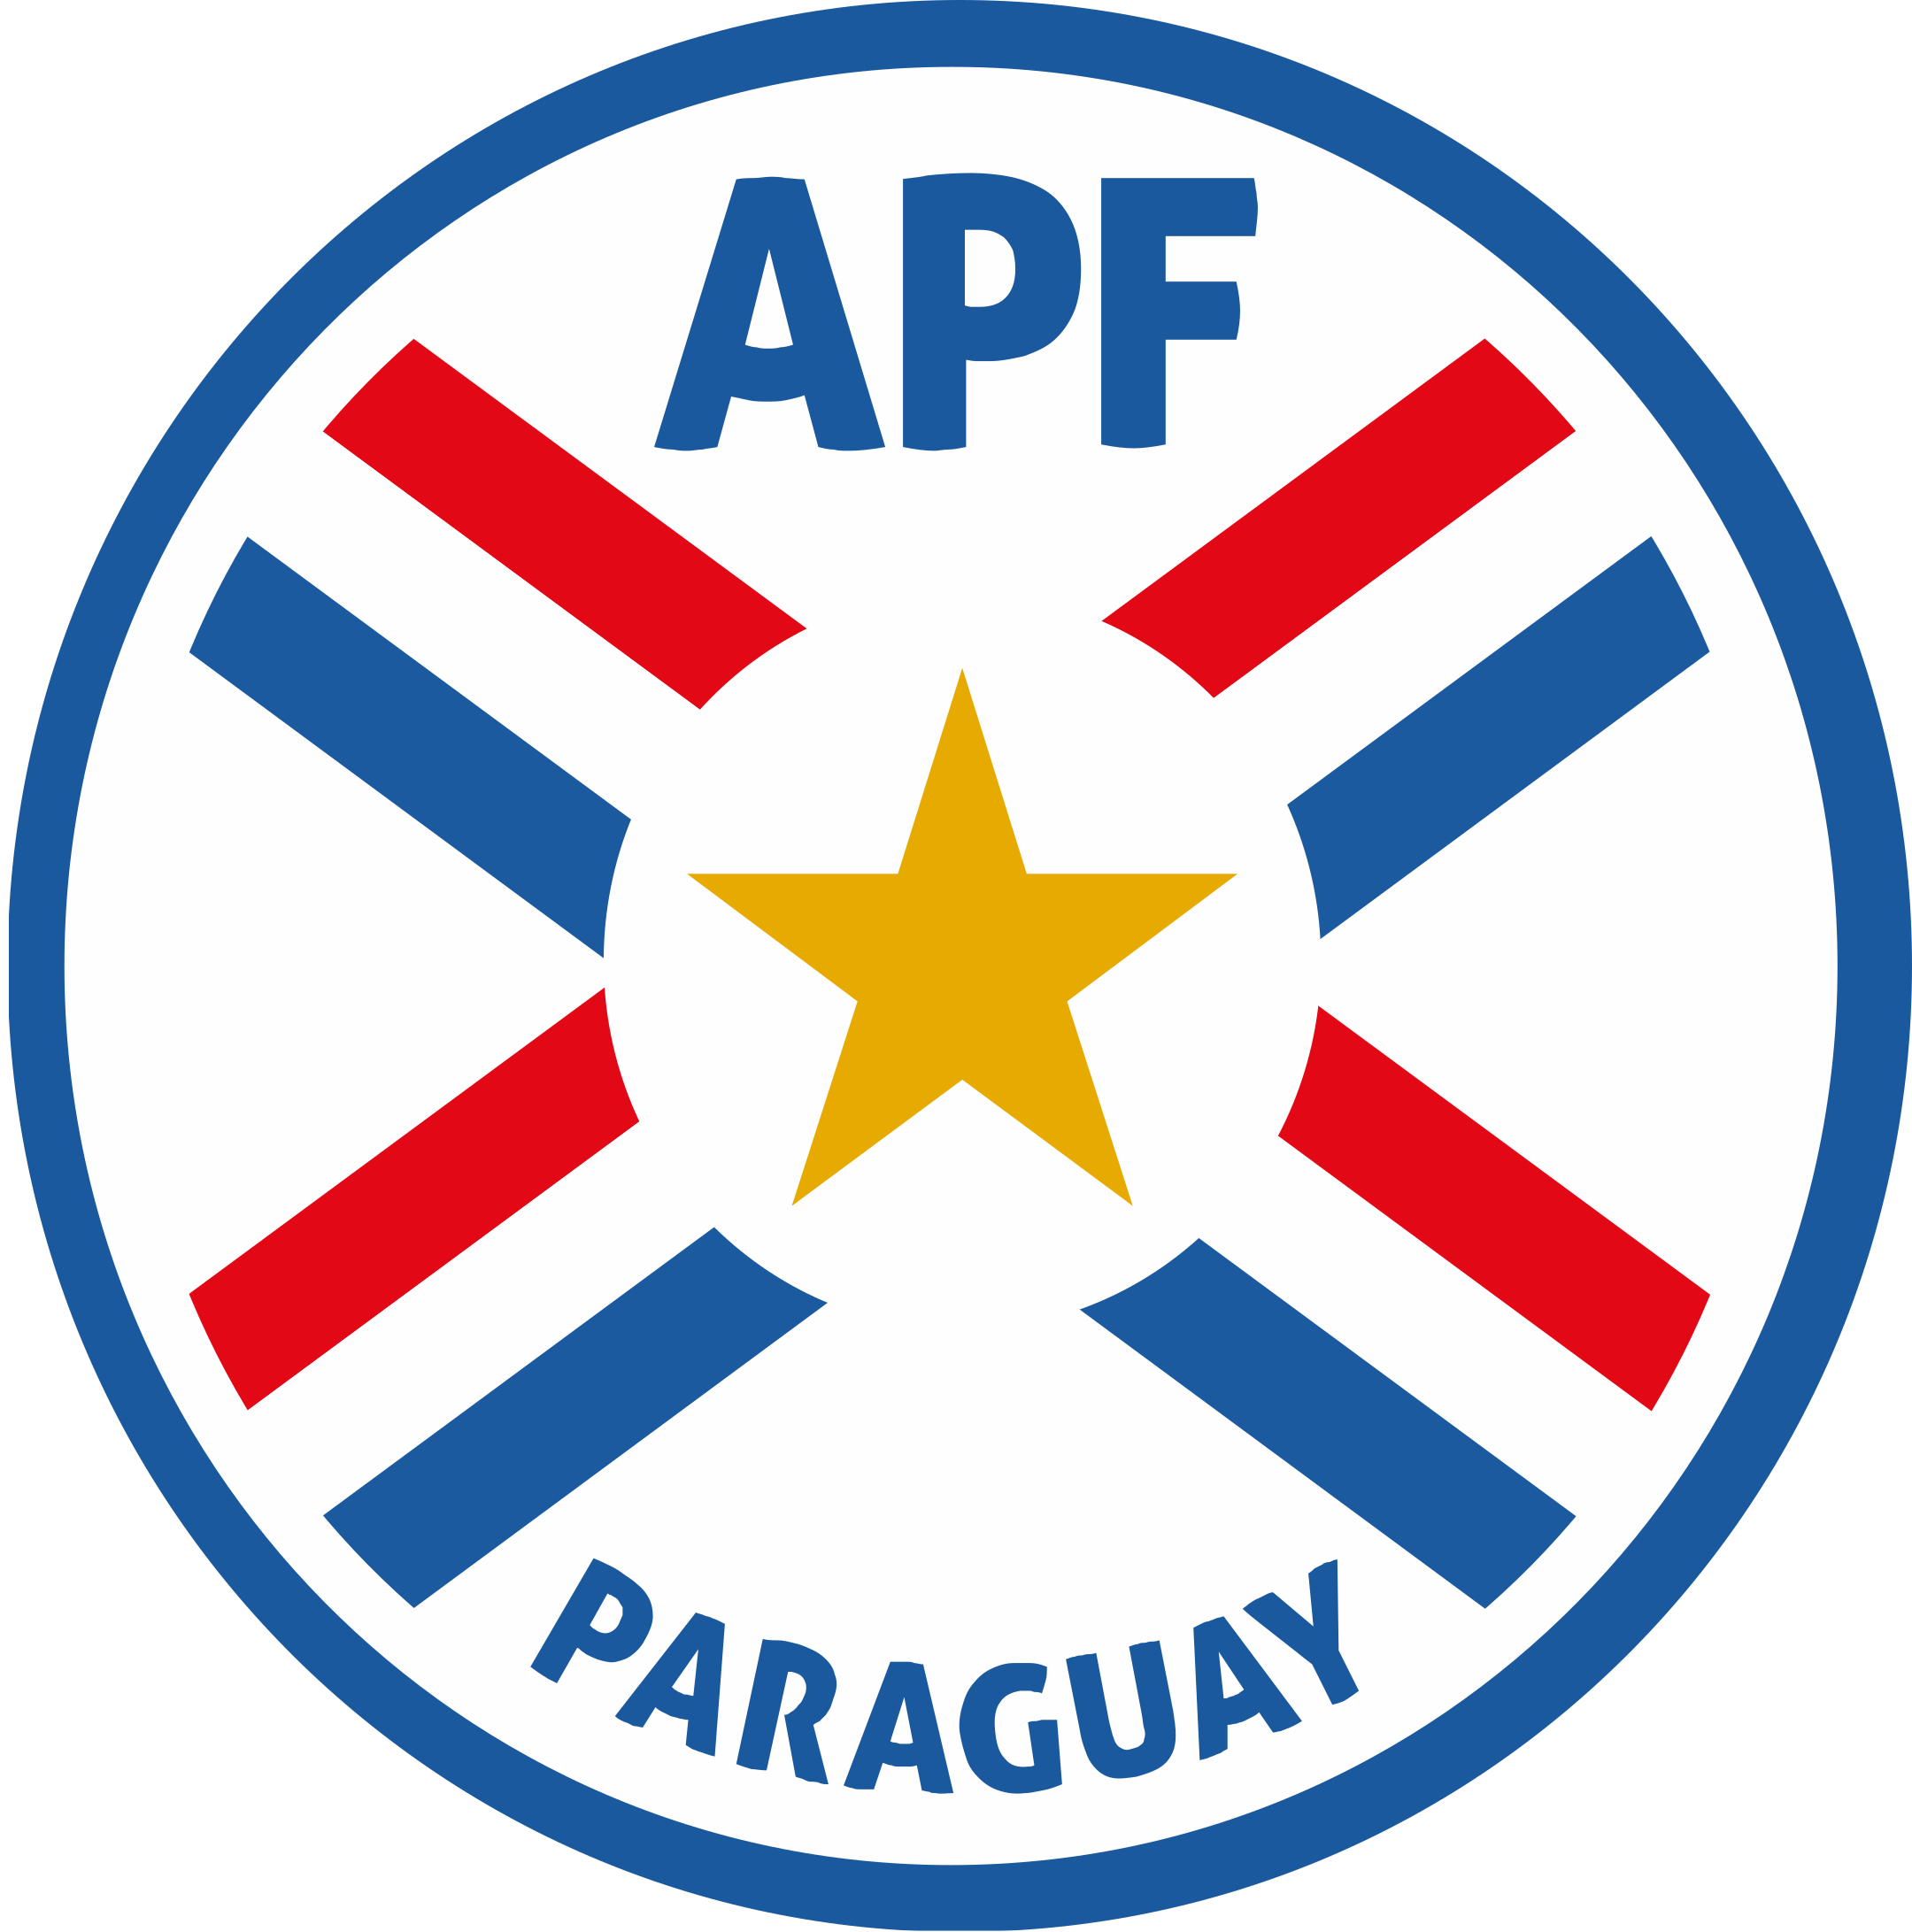 apf seleccion de futbol de paraguay logo 1 - APF Logo - Paraguay National Football Team Logo